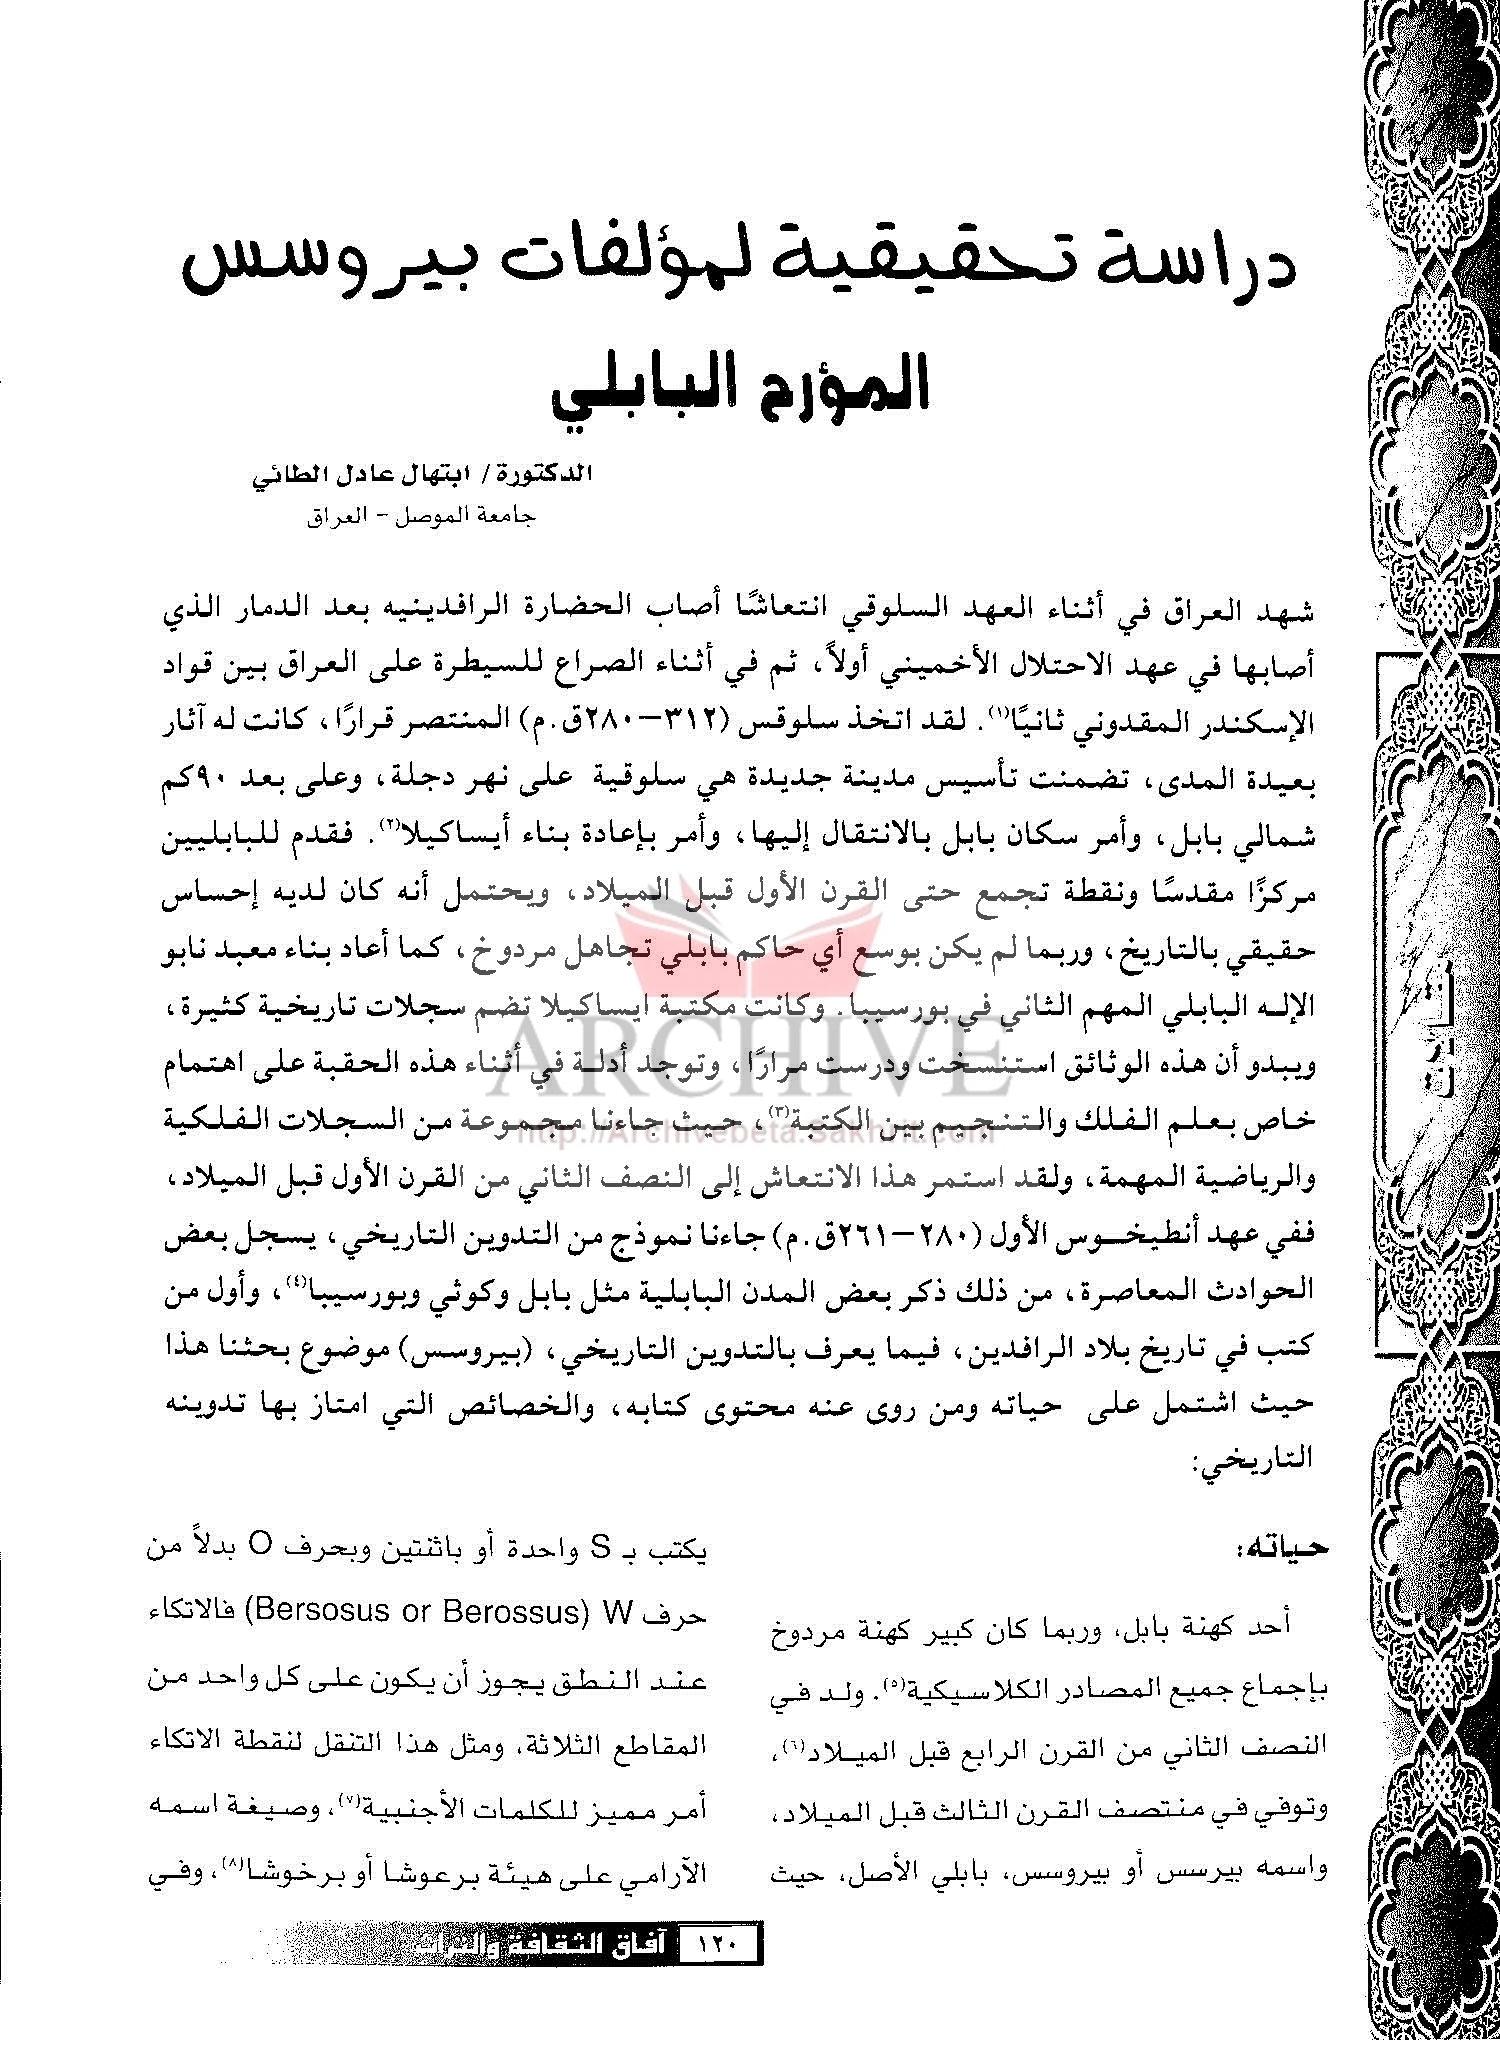 الأرشيف آفاق الثقافة والتراث العدد 44 تاريخ الإصدار 1 ديسمبر 2003 مقالة دراسة تحقيقية لمؤلفات بيروسس المؤرخ البابلي